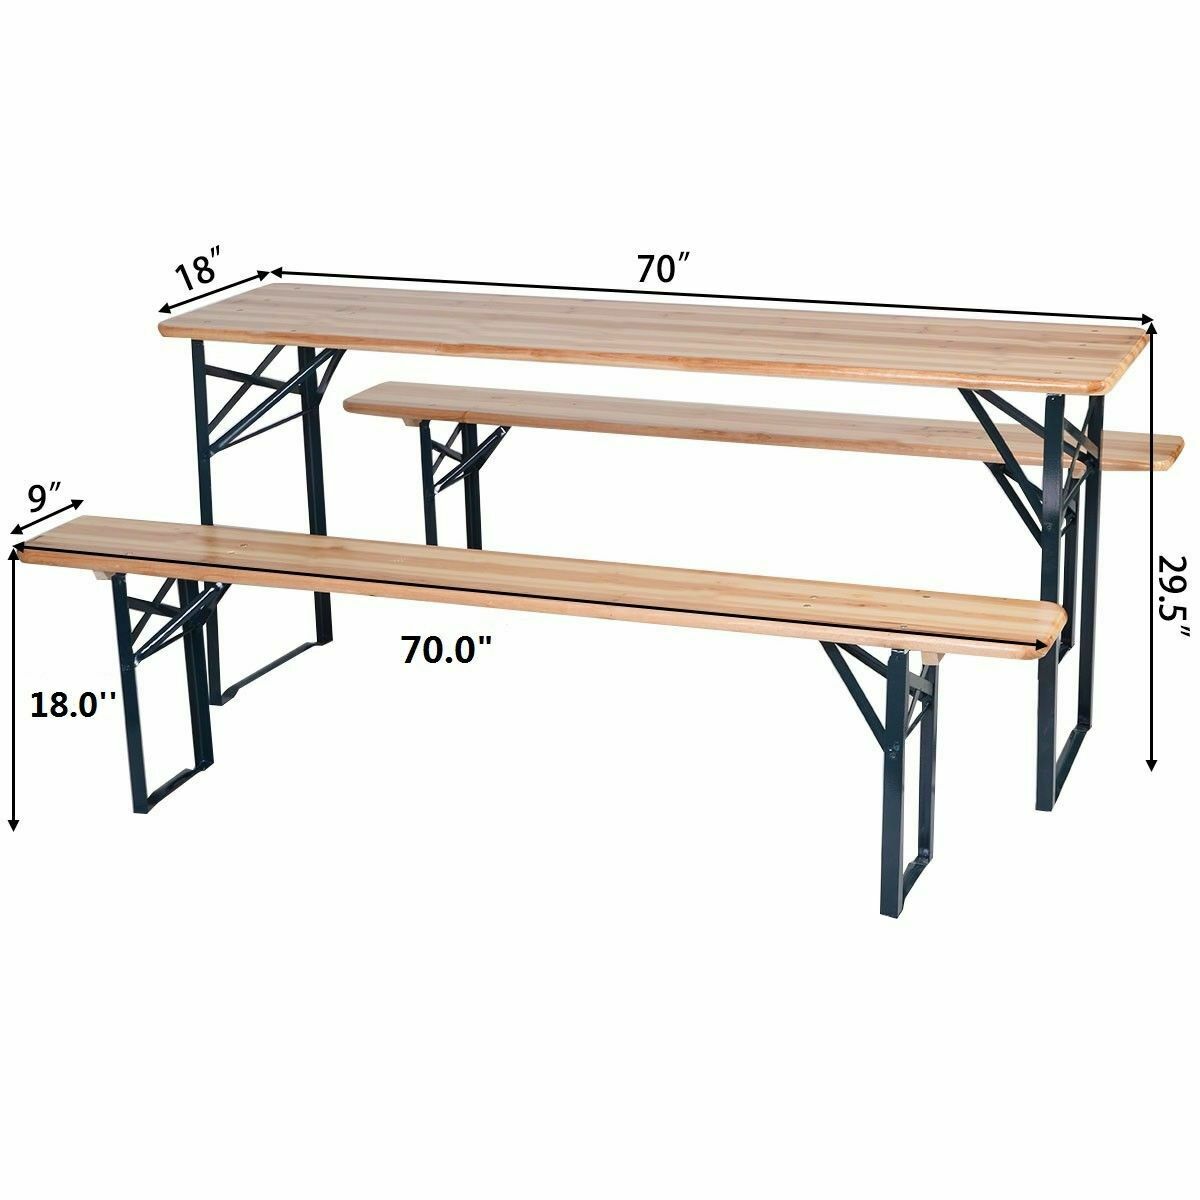 Wooden Portable Patio Garden Picnic Table And Bench Set